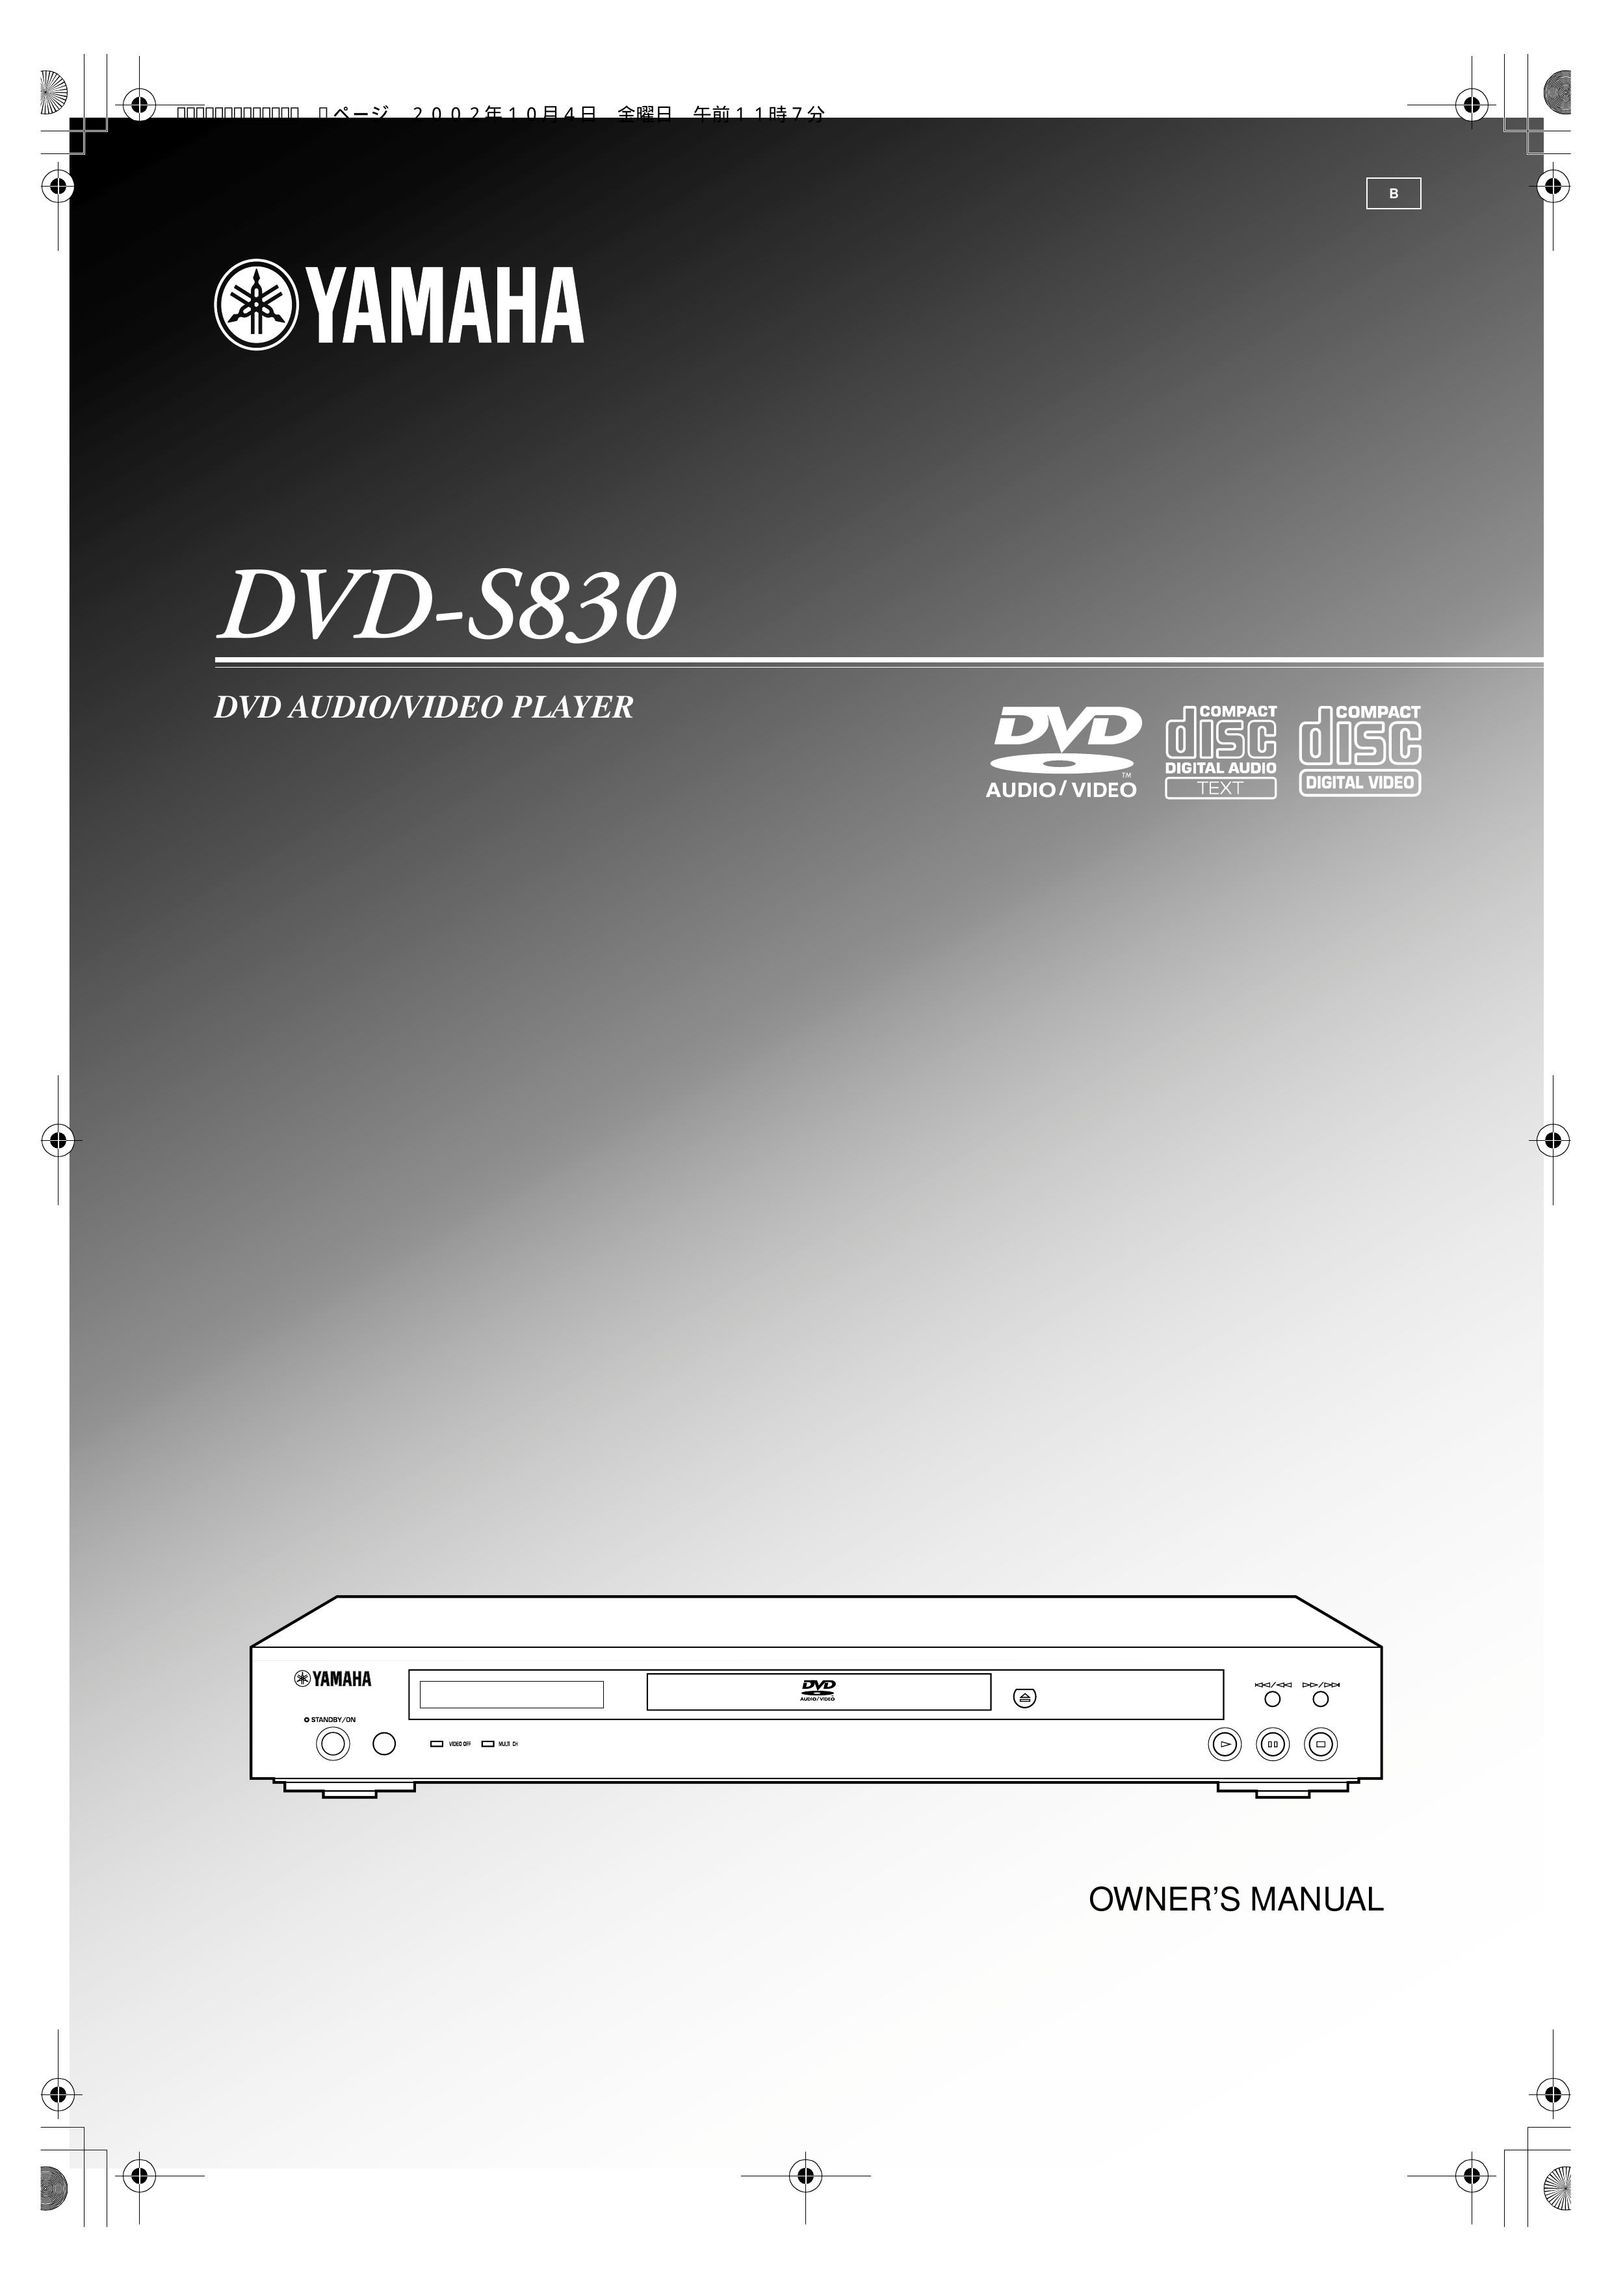 Yamaha DVD-S830 DVD Player User Manual